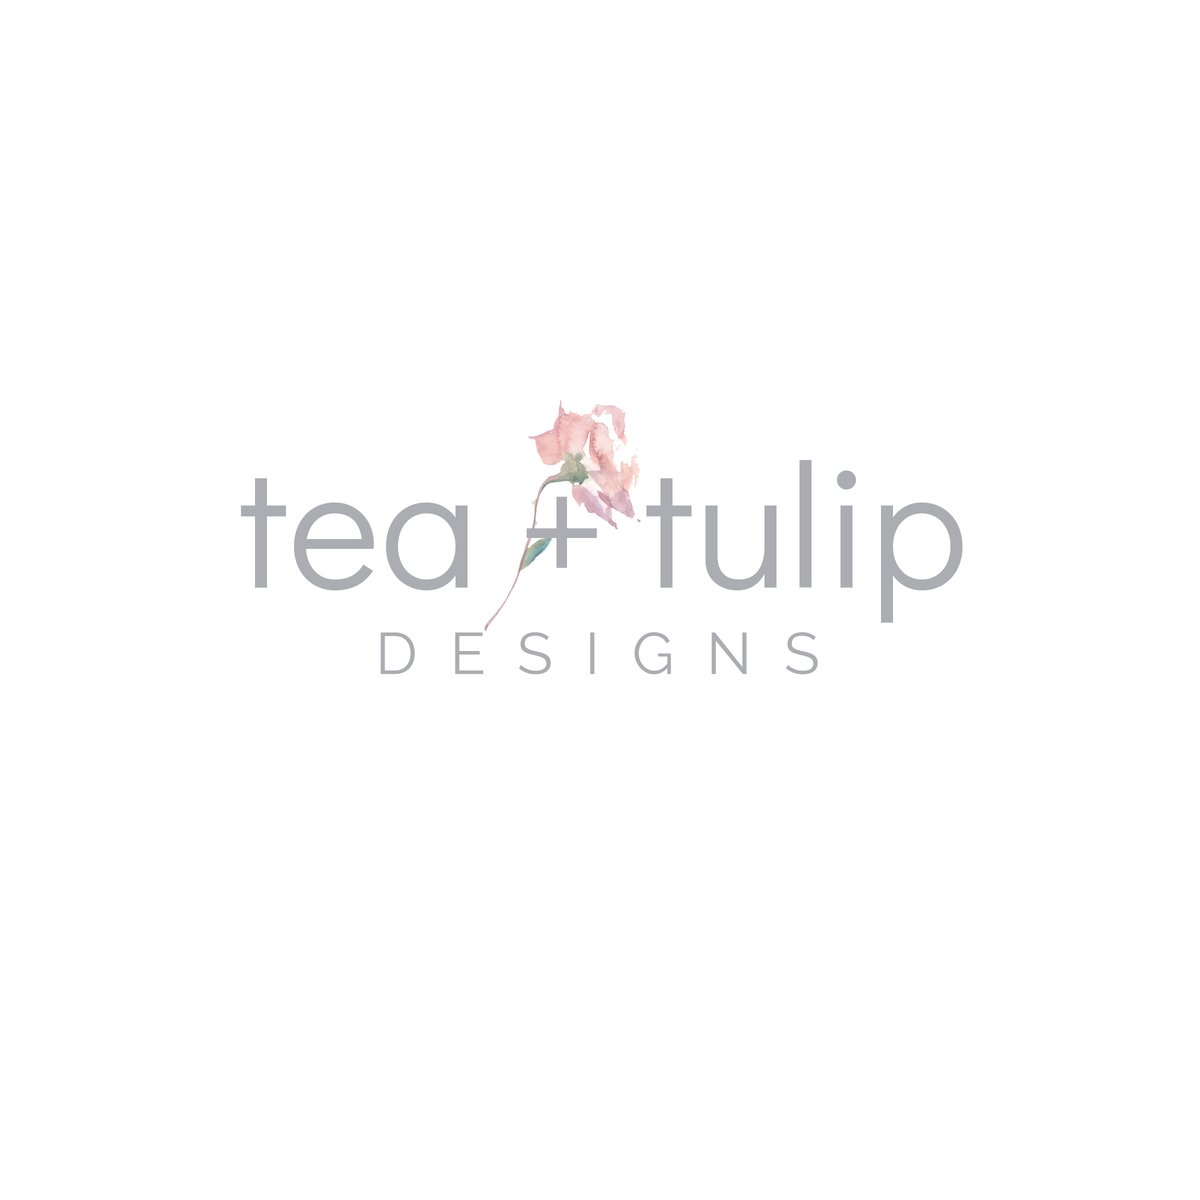 tea + tulip designs